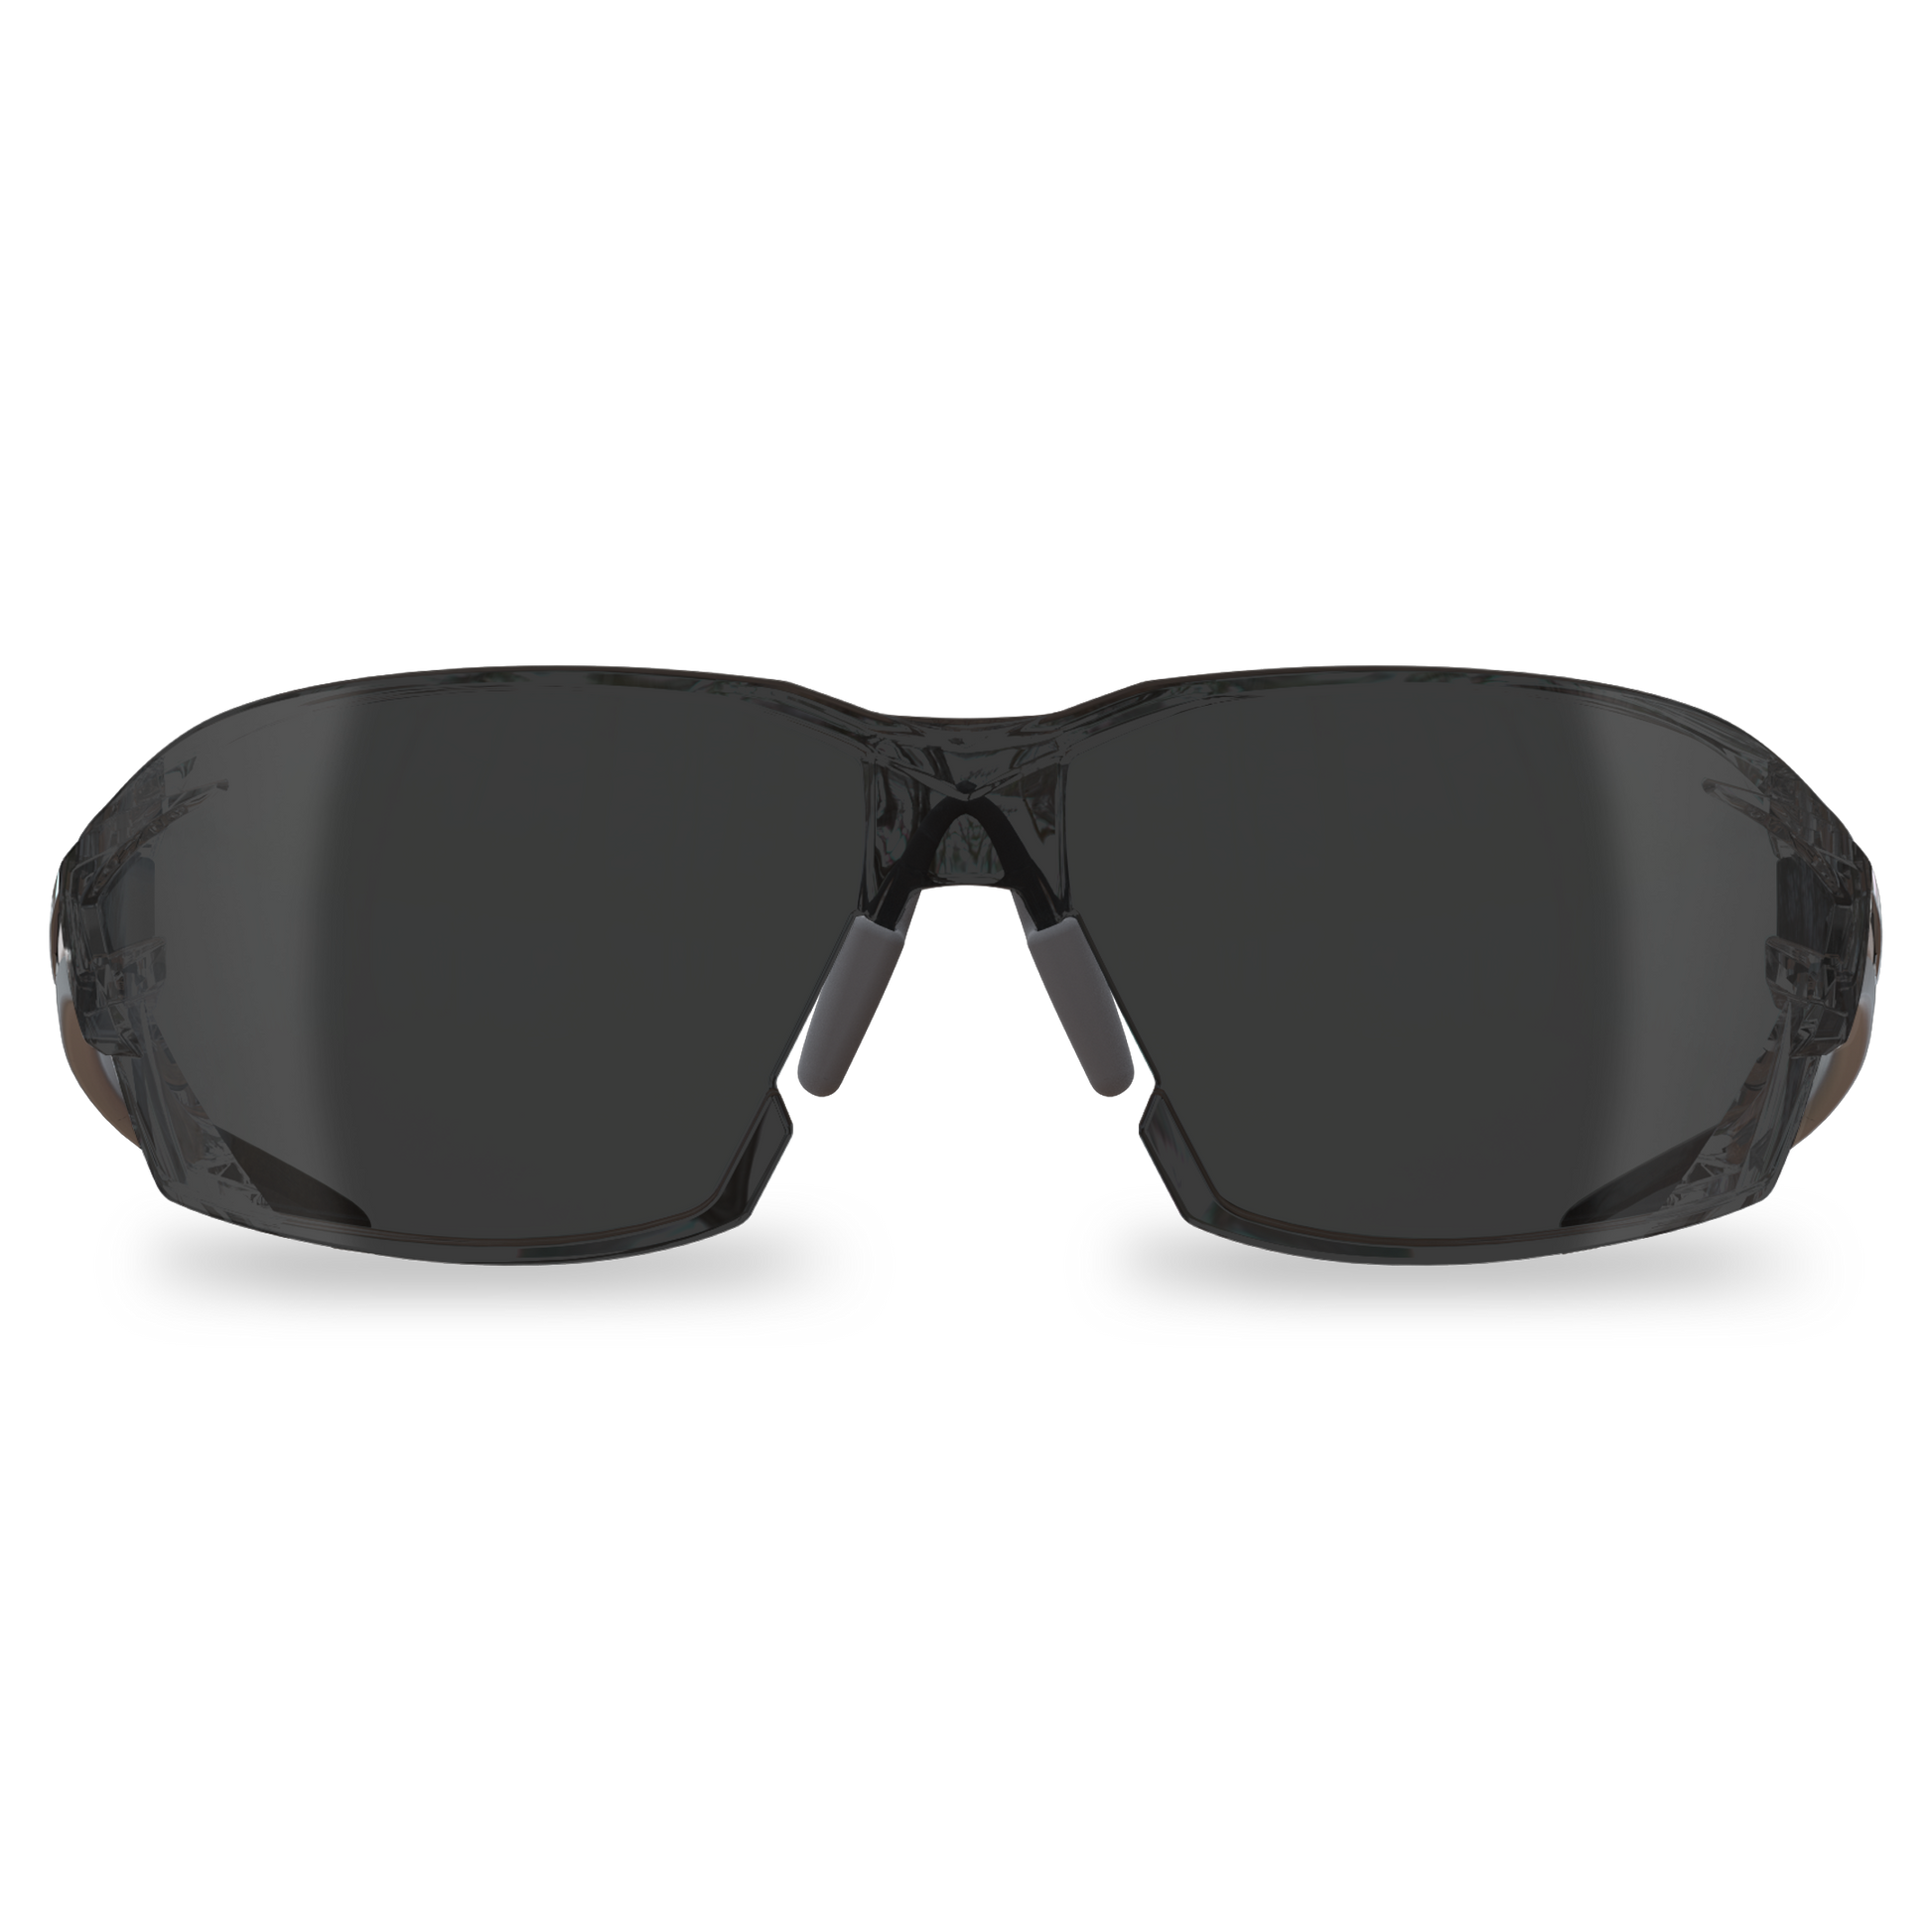 Edge XV416 Nevosa Safety Glasses - Smoke